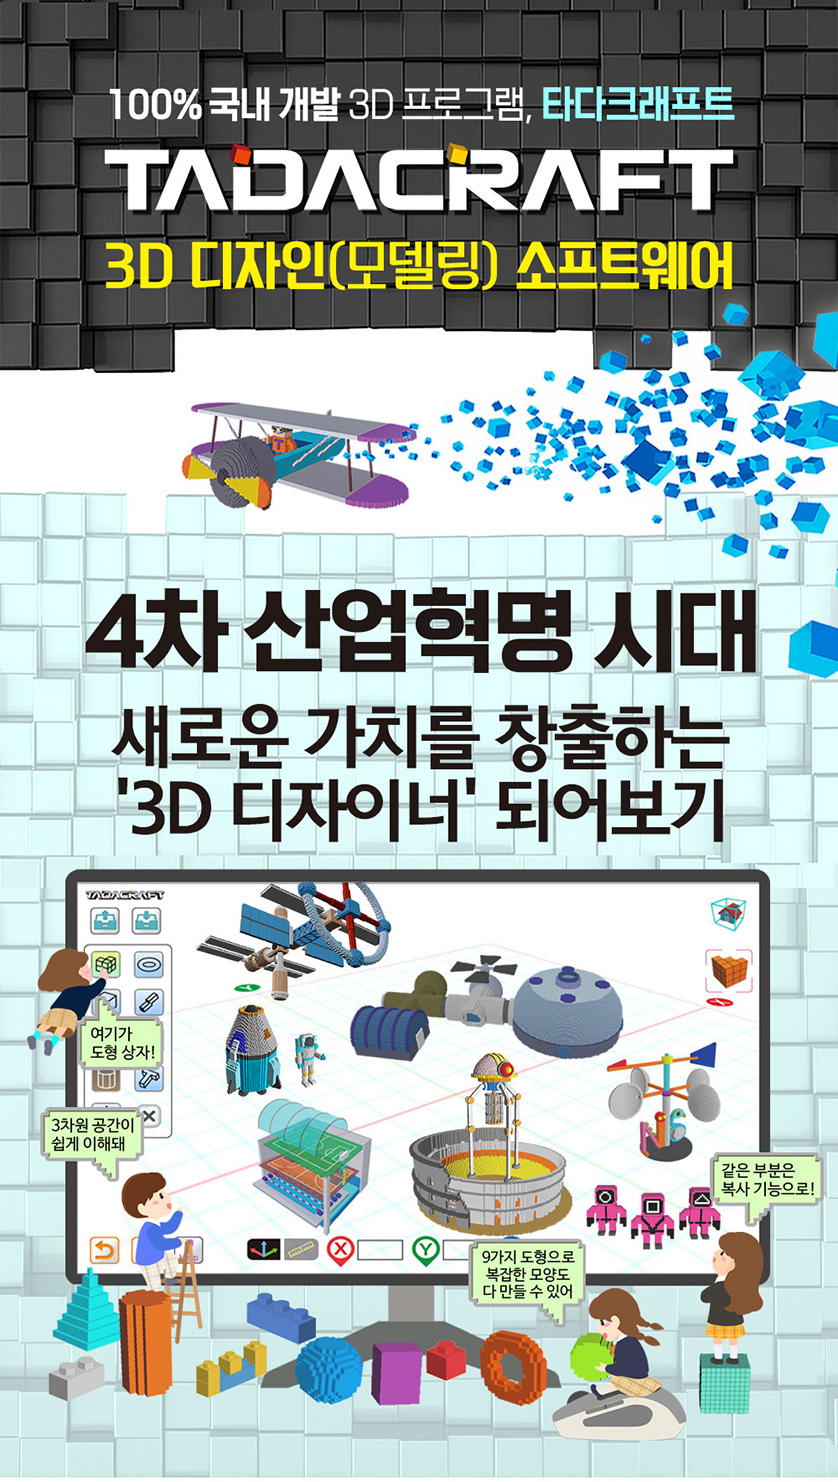 100% 국내개발 3D 프로그램, 타다크래프트